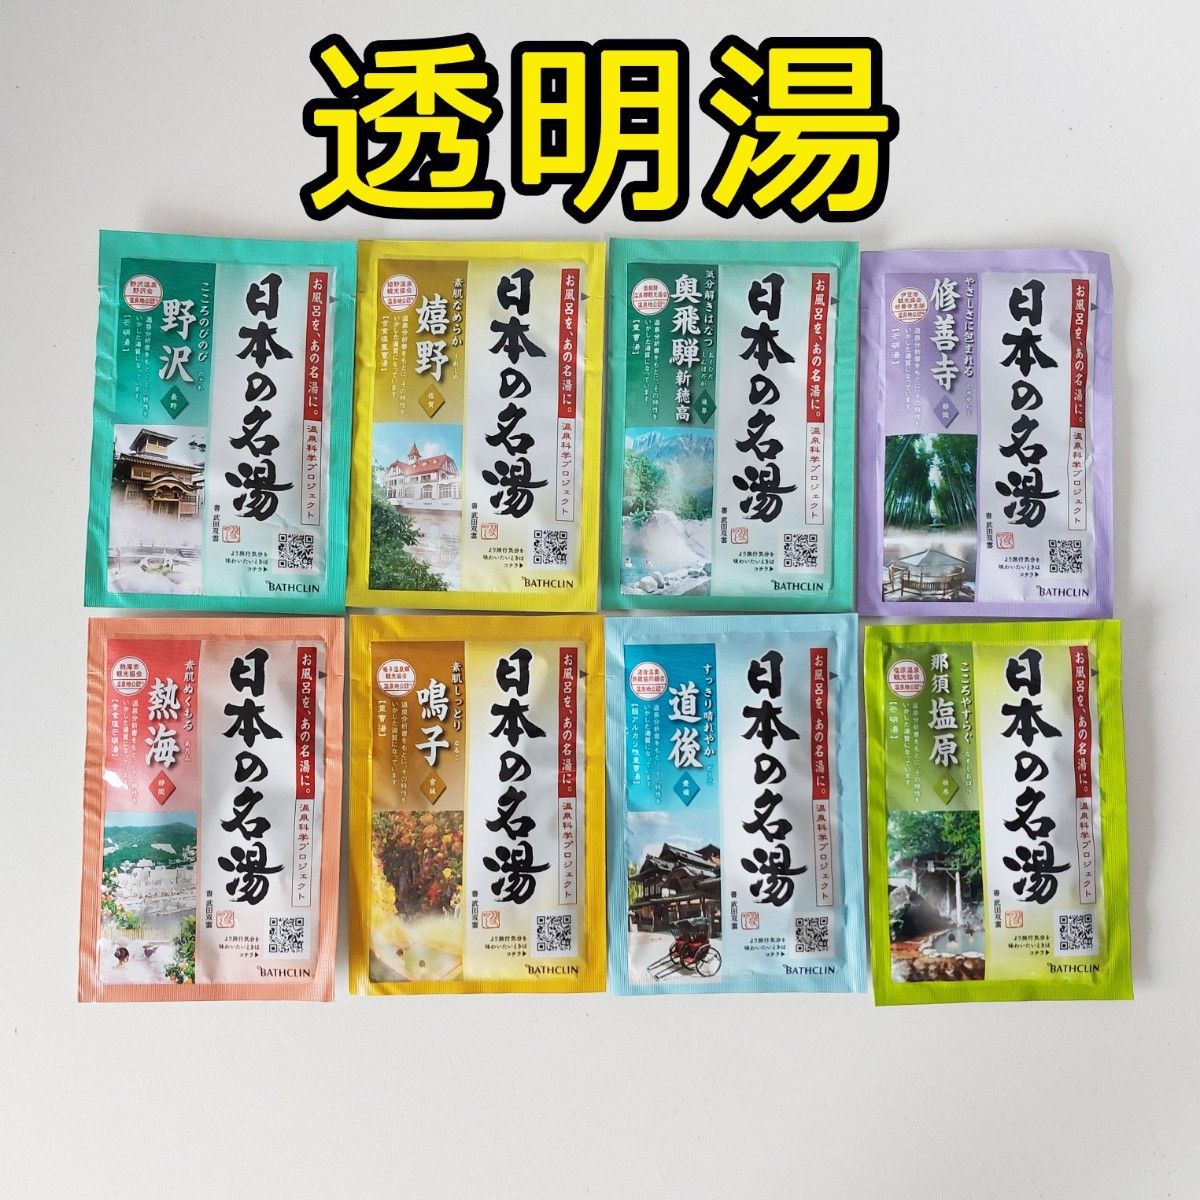 新品 BATHCLIN 日本の名湯 薬用入浴剤 15種類40包 コストコ バスクリン 薬用入浴剤 costco にごり湯透明湯